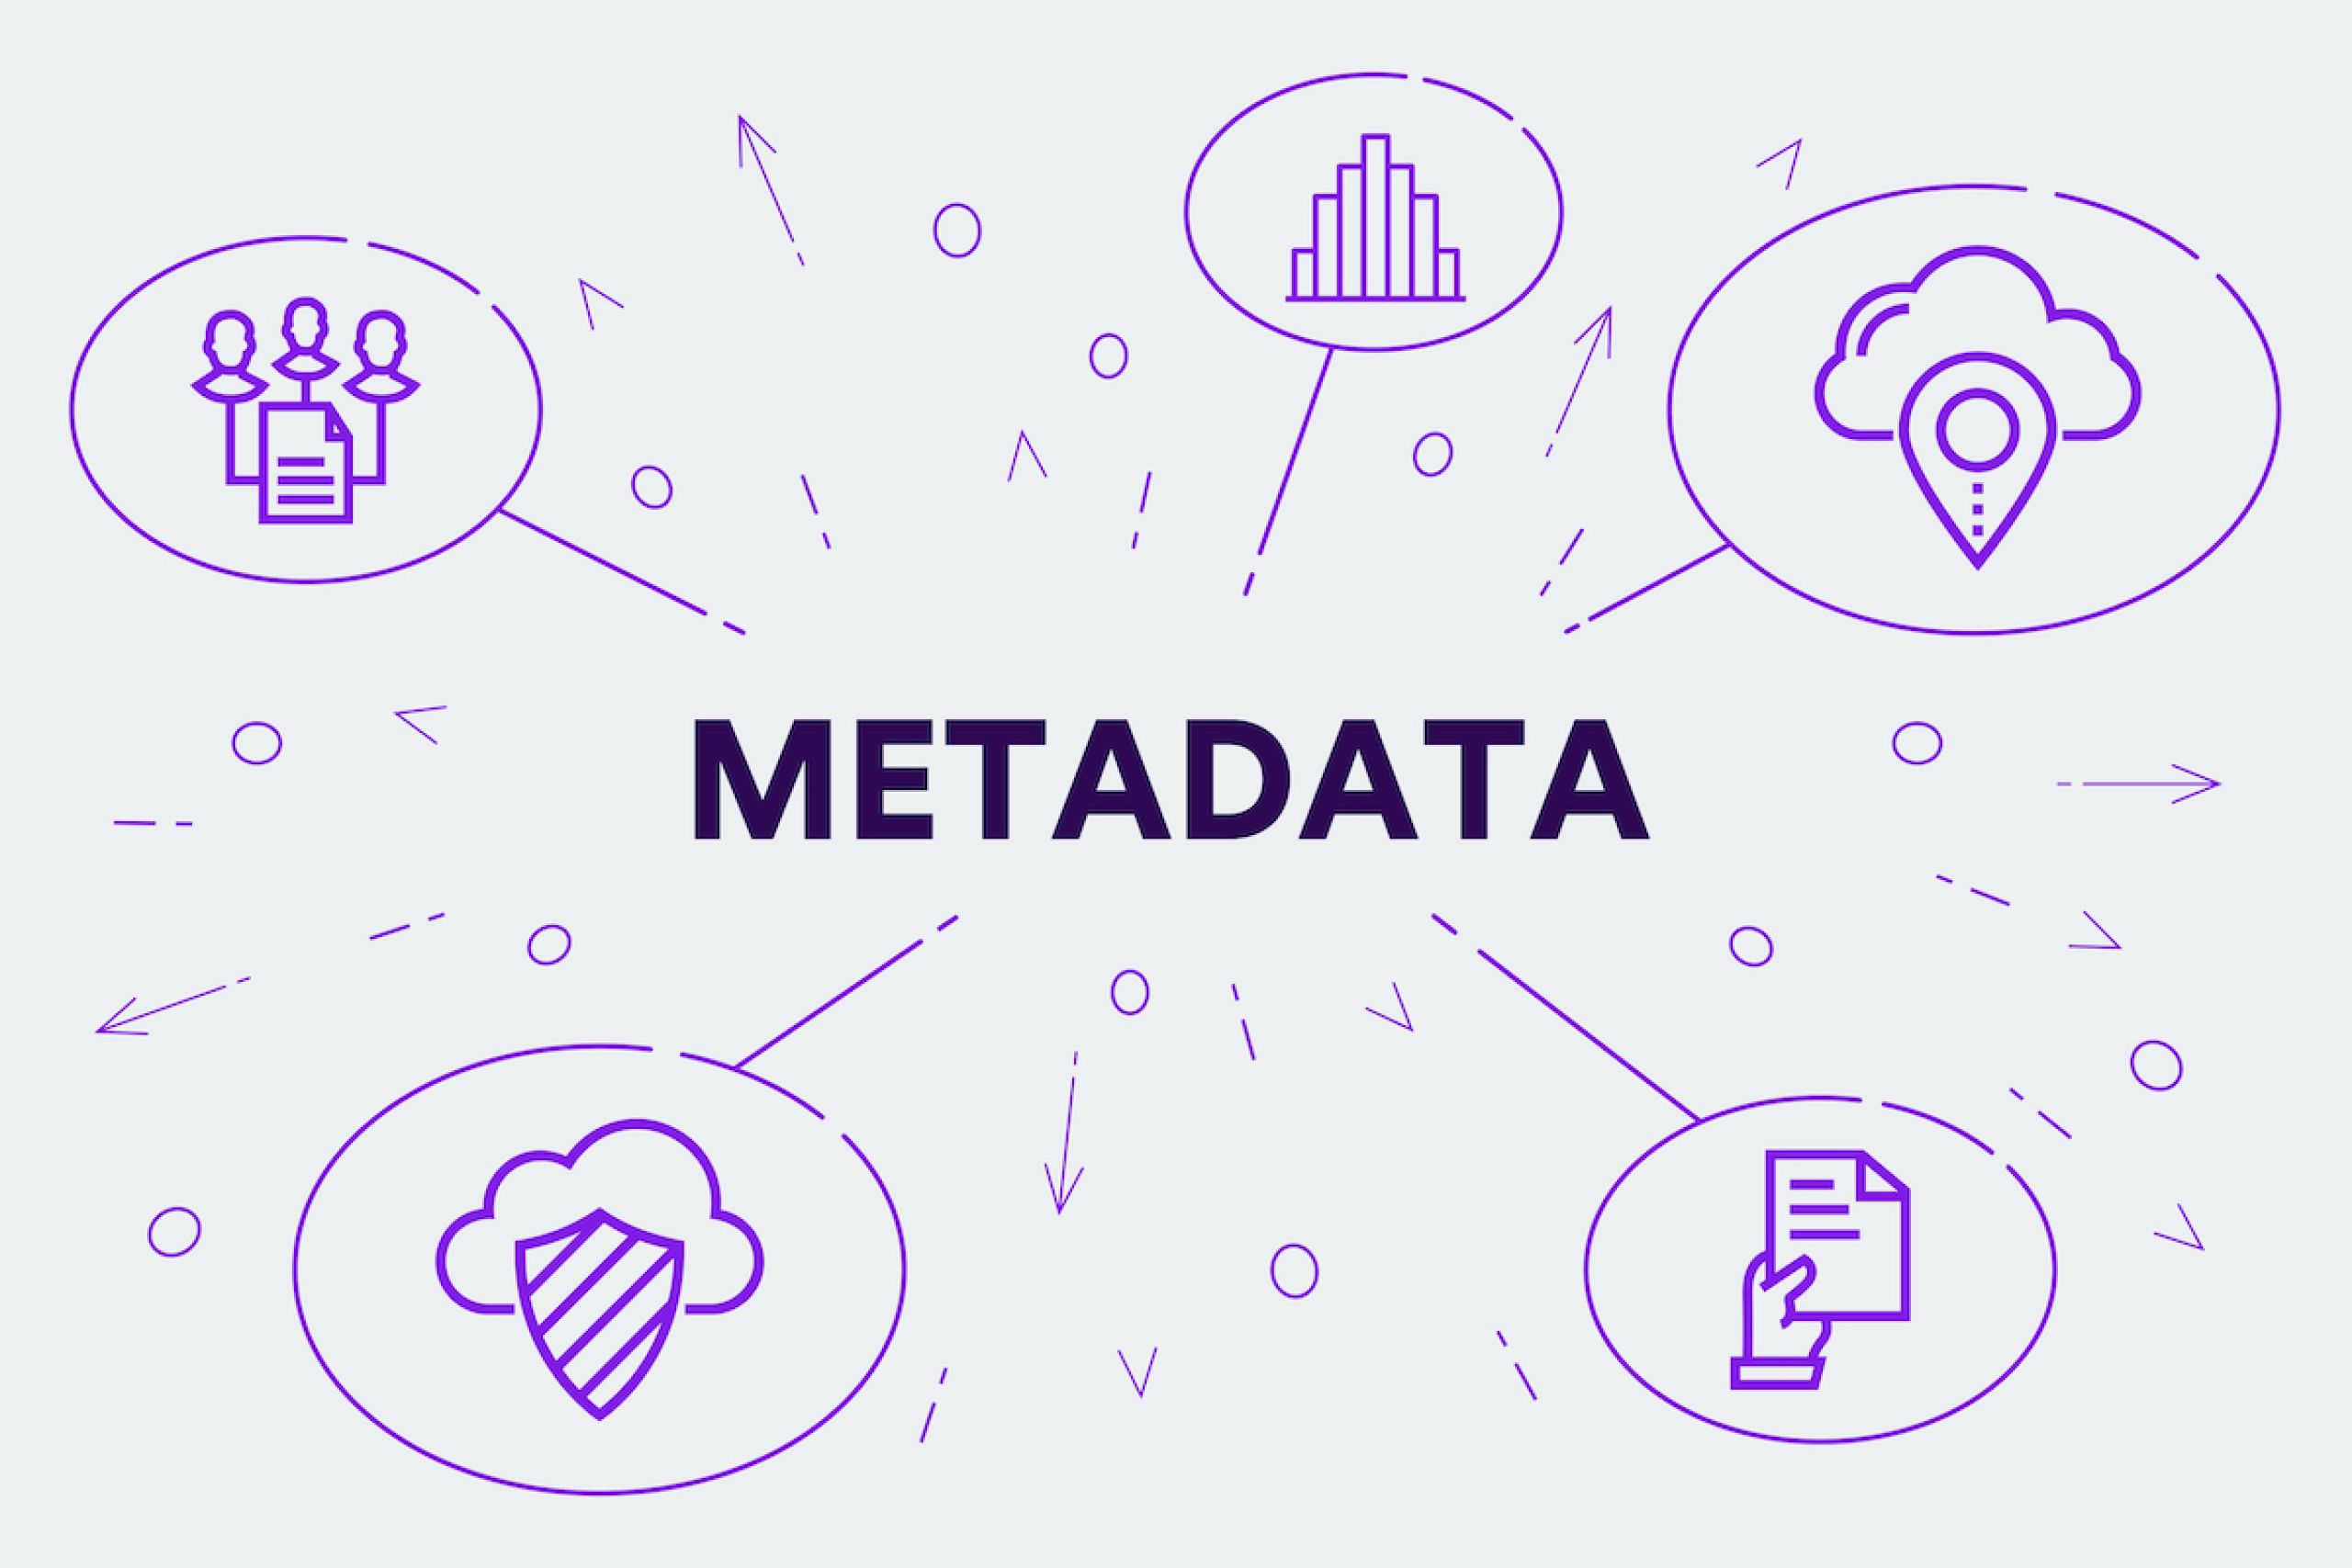 Metaadat: értékes információ az adatokról